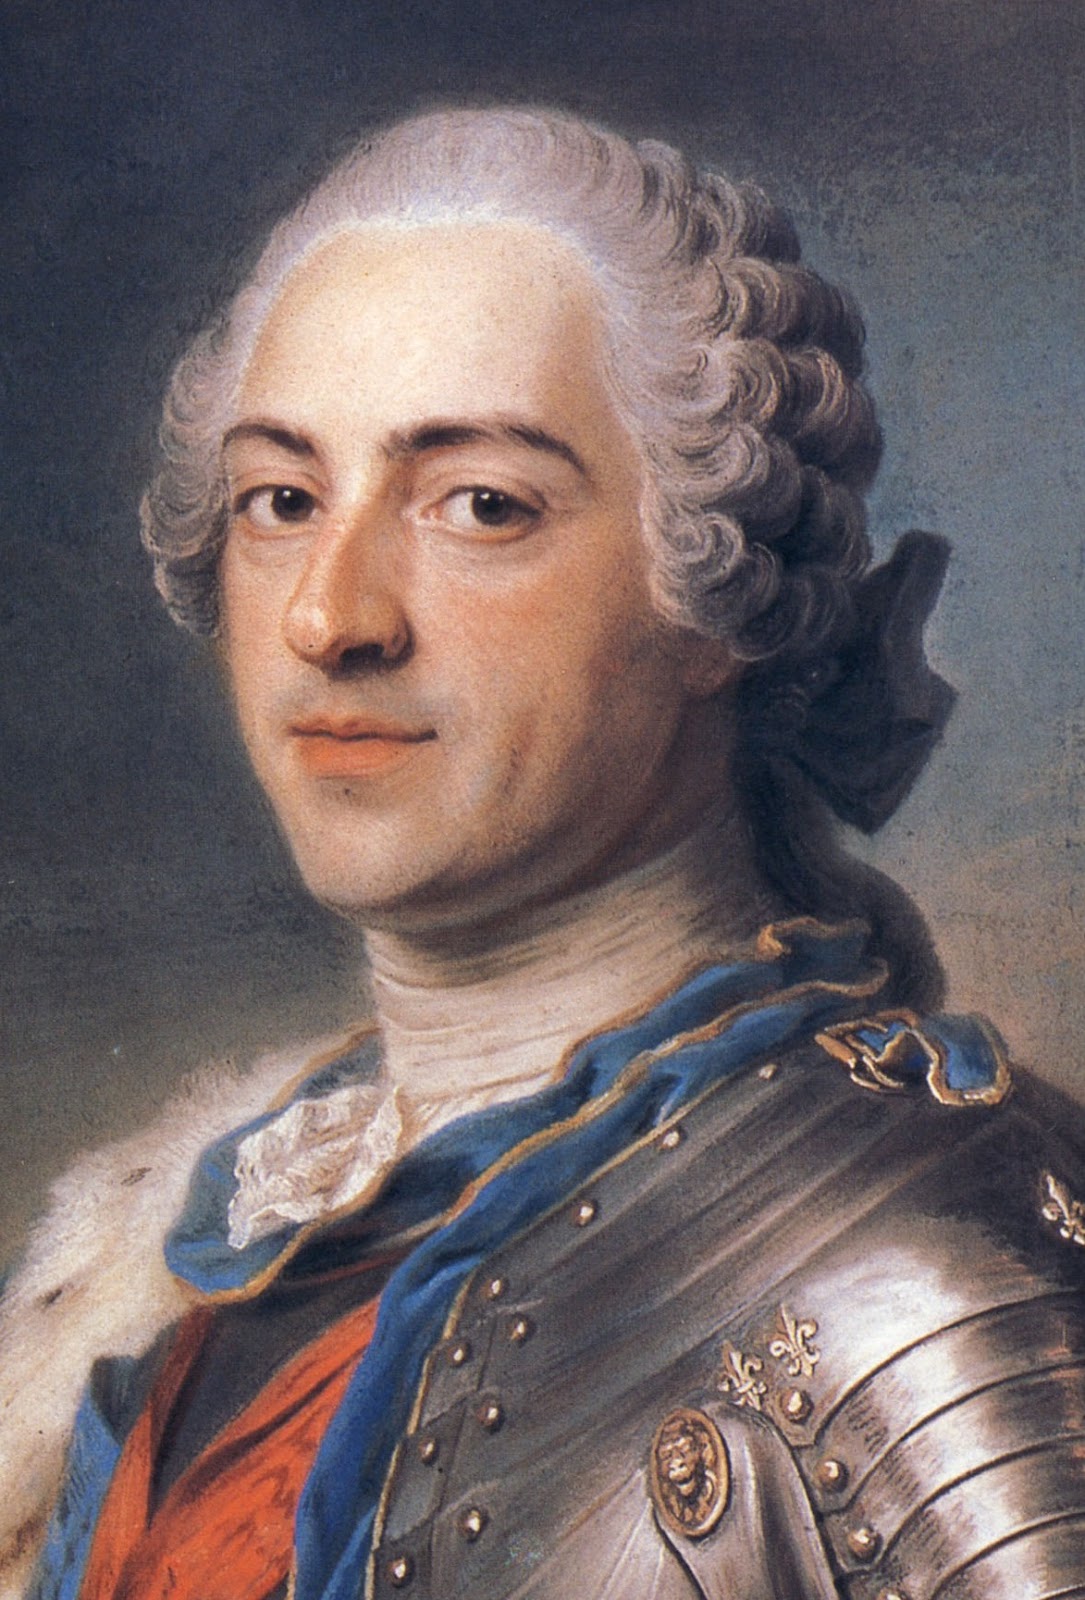 Morte na História: MORTE DE LUÍS XV DA FRANÇA